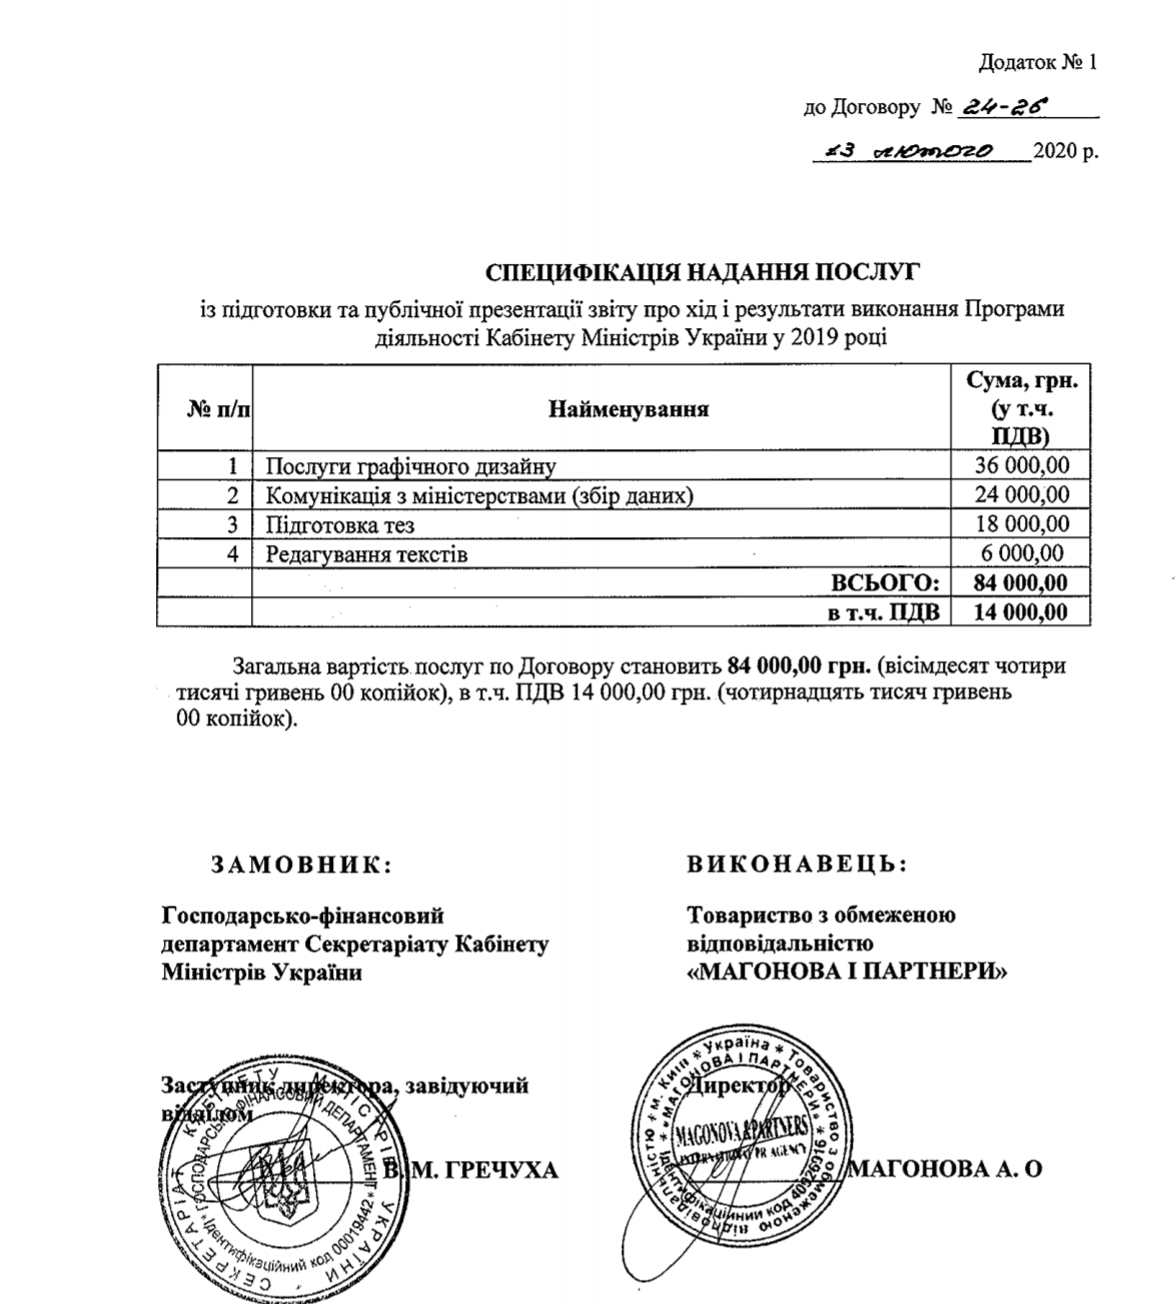 Кабмин обвинили в пиаре за 84 тыс. гривен: всплыли подробности скандала